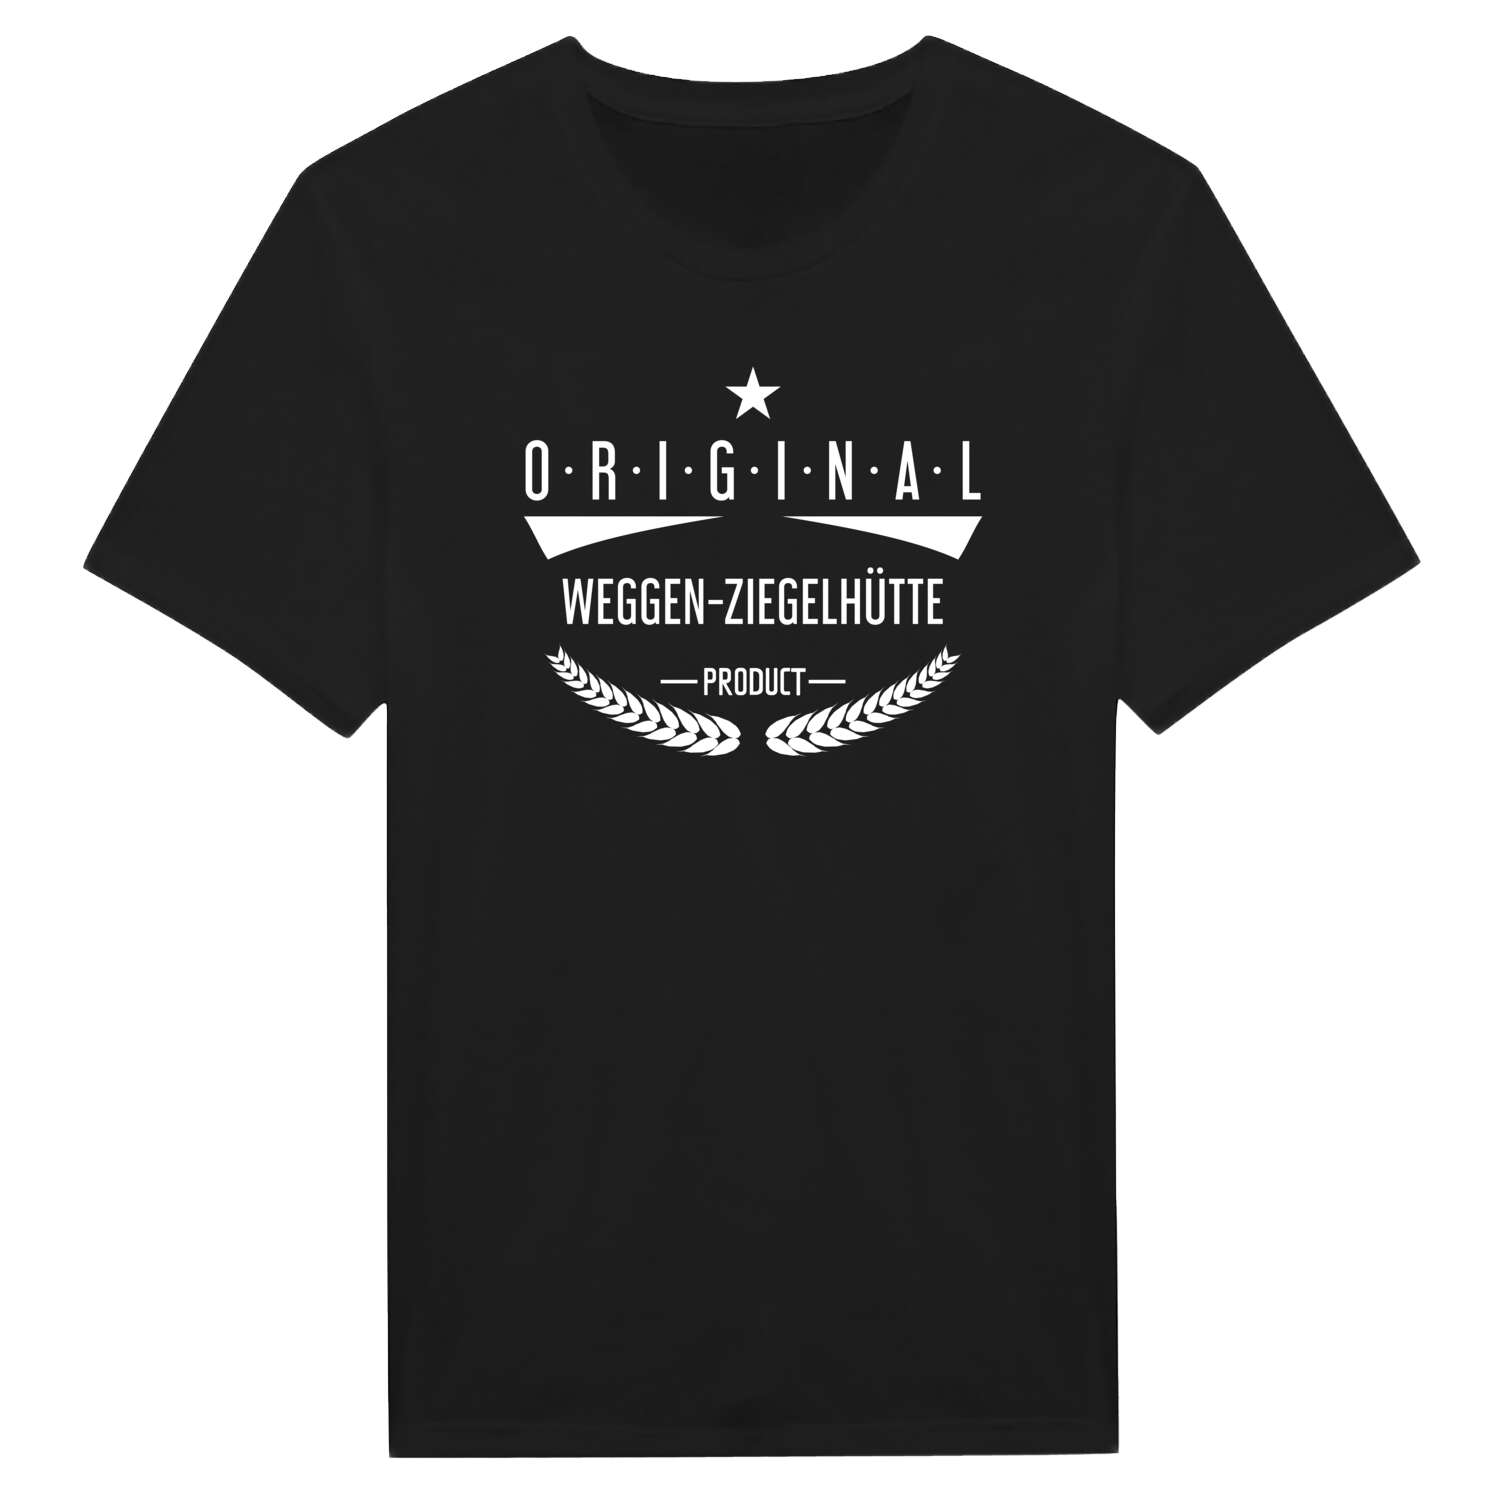 Weggen-Ziegelhütte T-Shirt »Original Product«